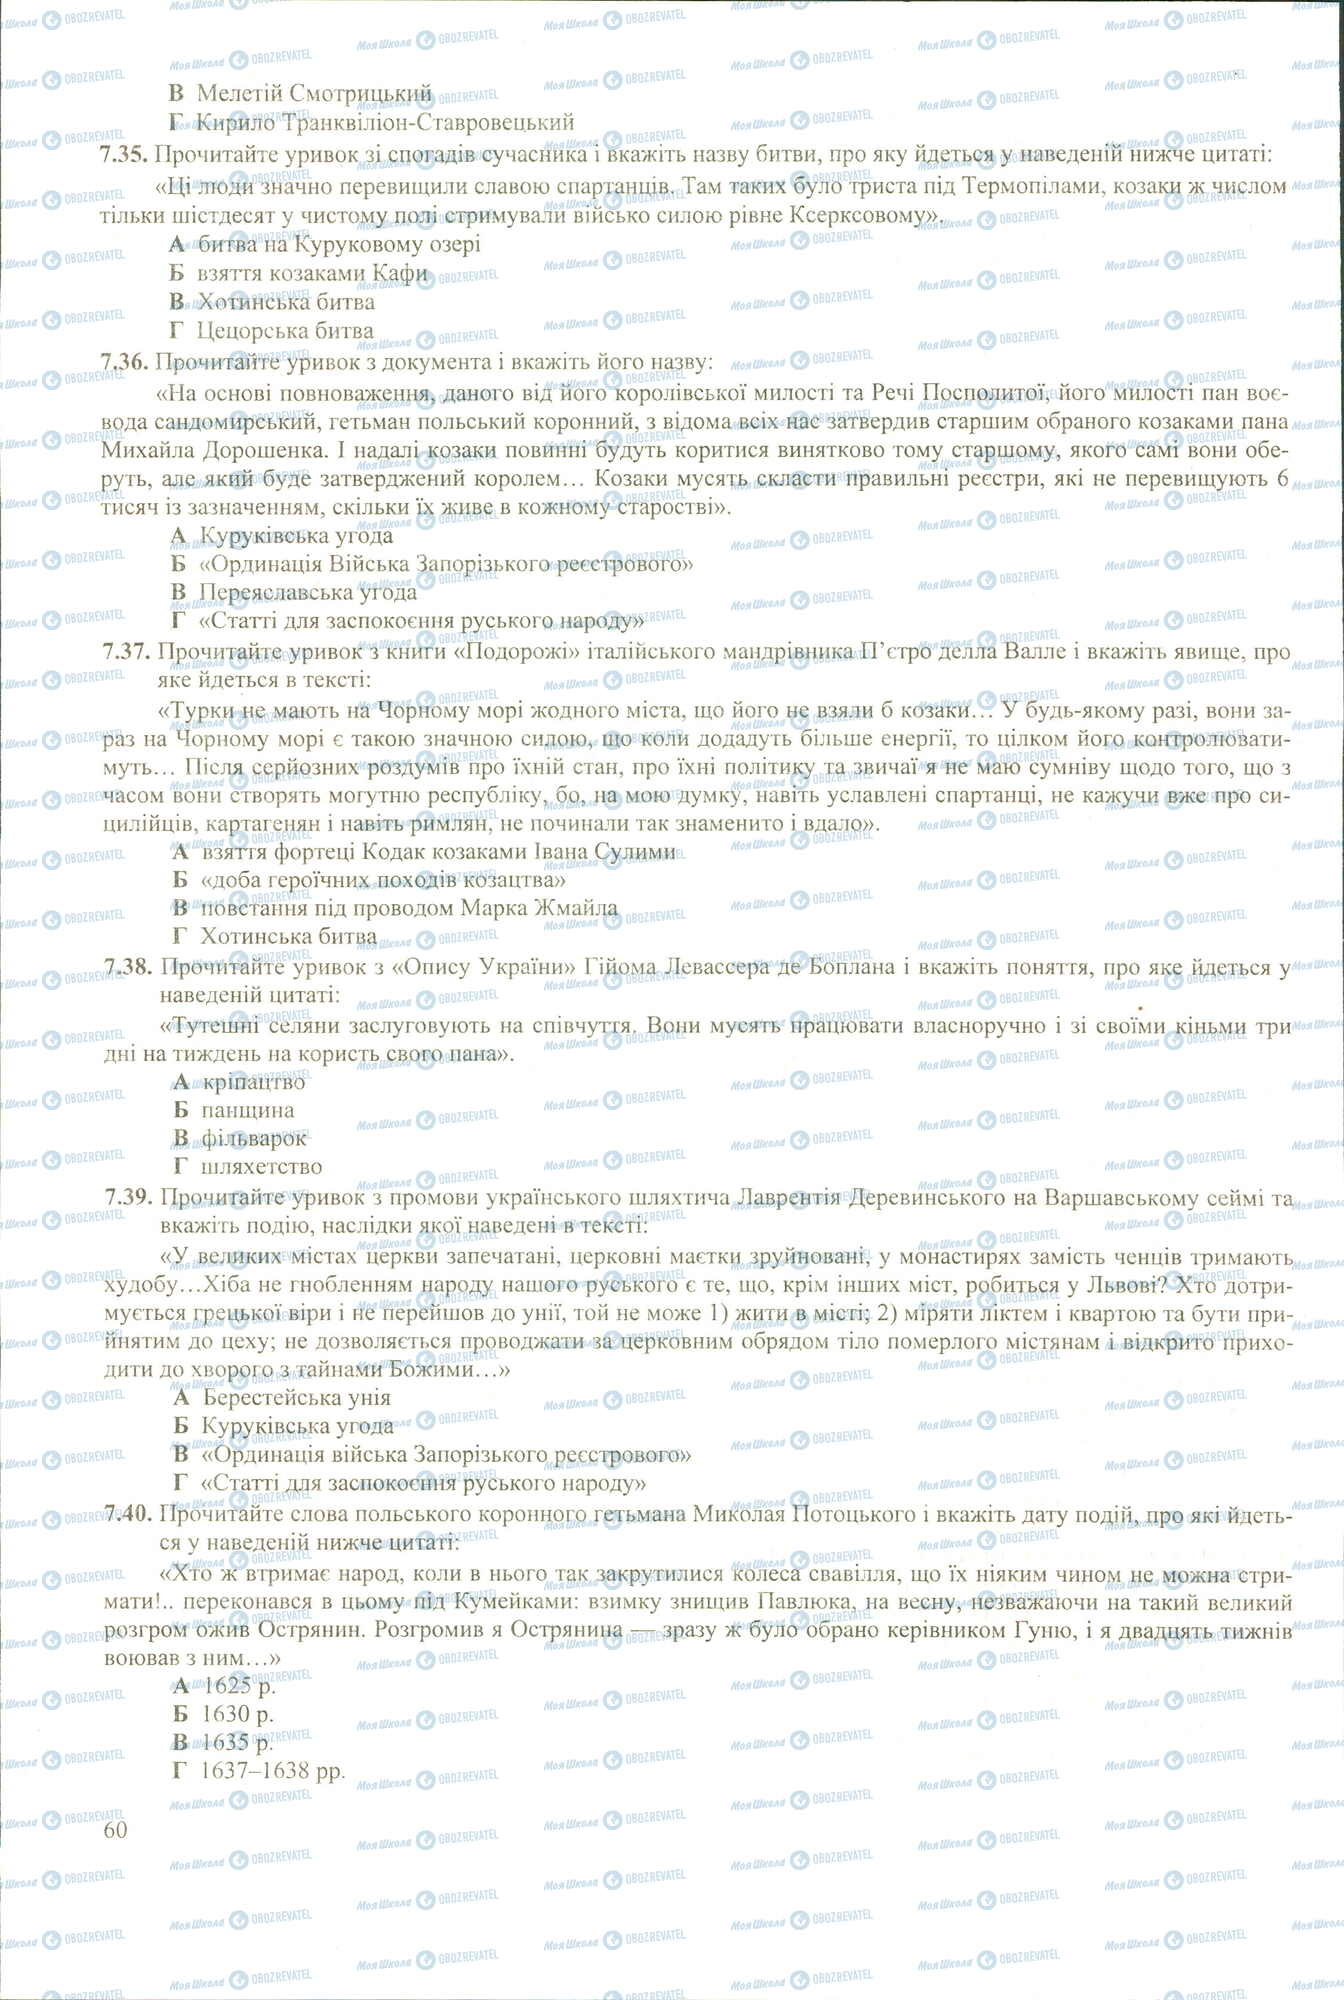 ЗНО История Украины 11 класс страница 7.35-7.40